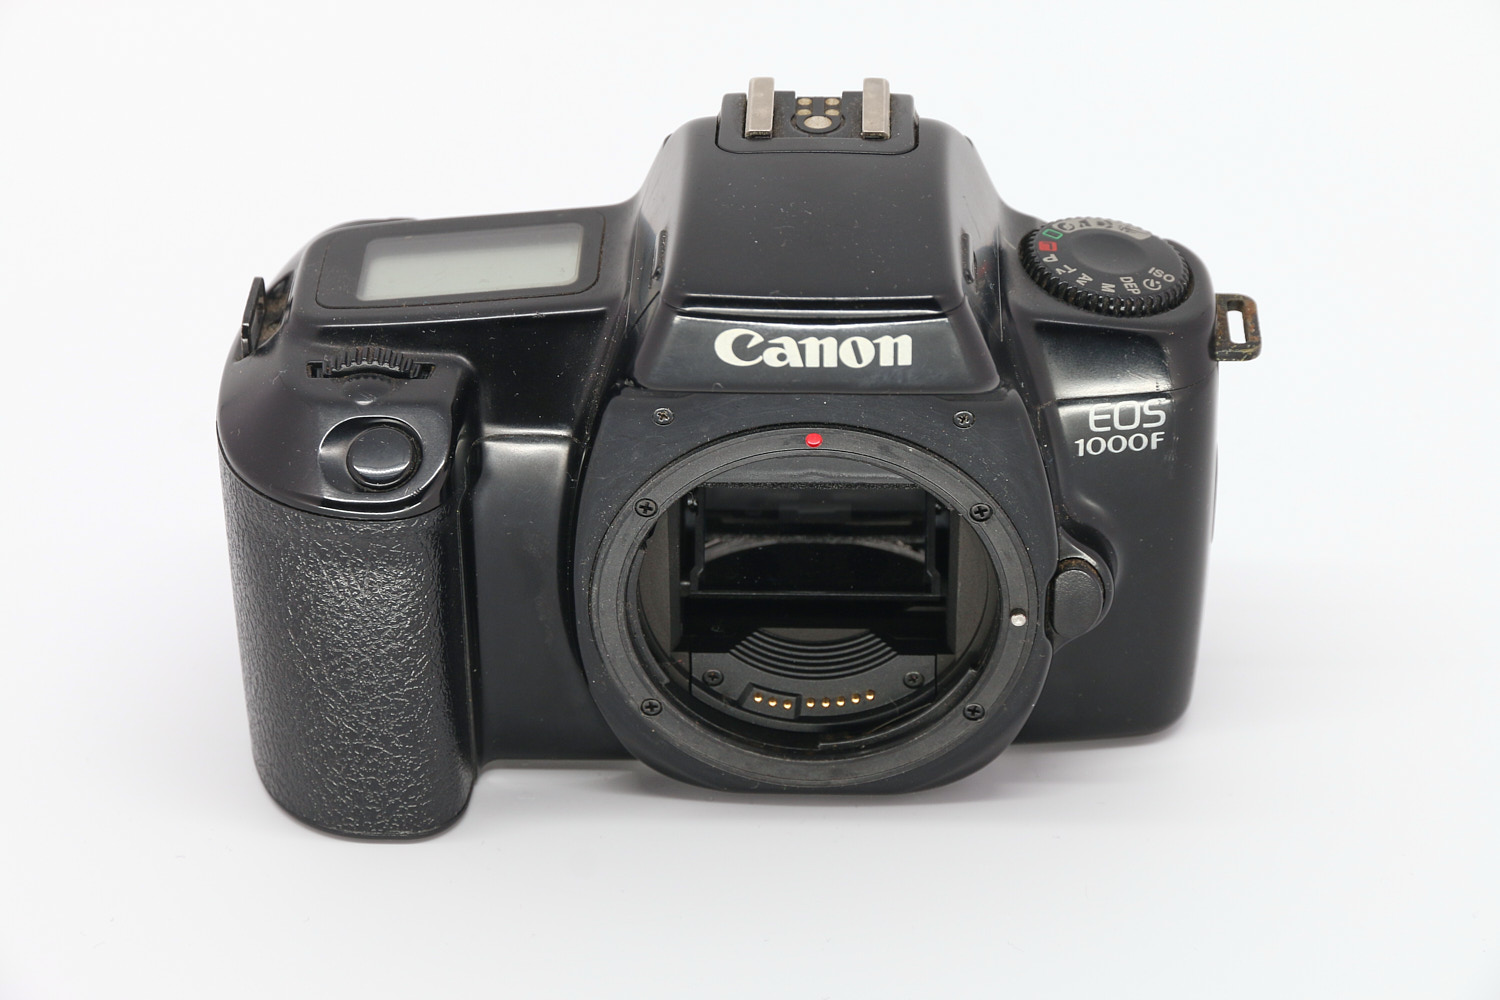 Canon EOS 1000F gebraucht Bild 01